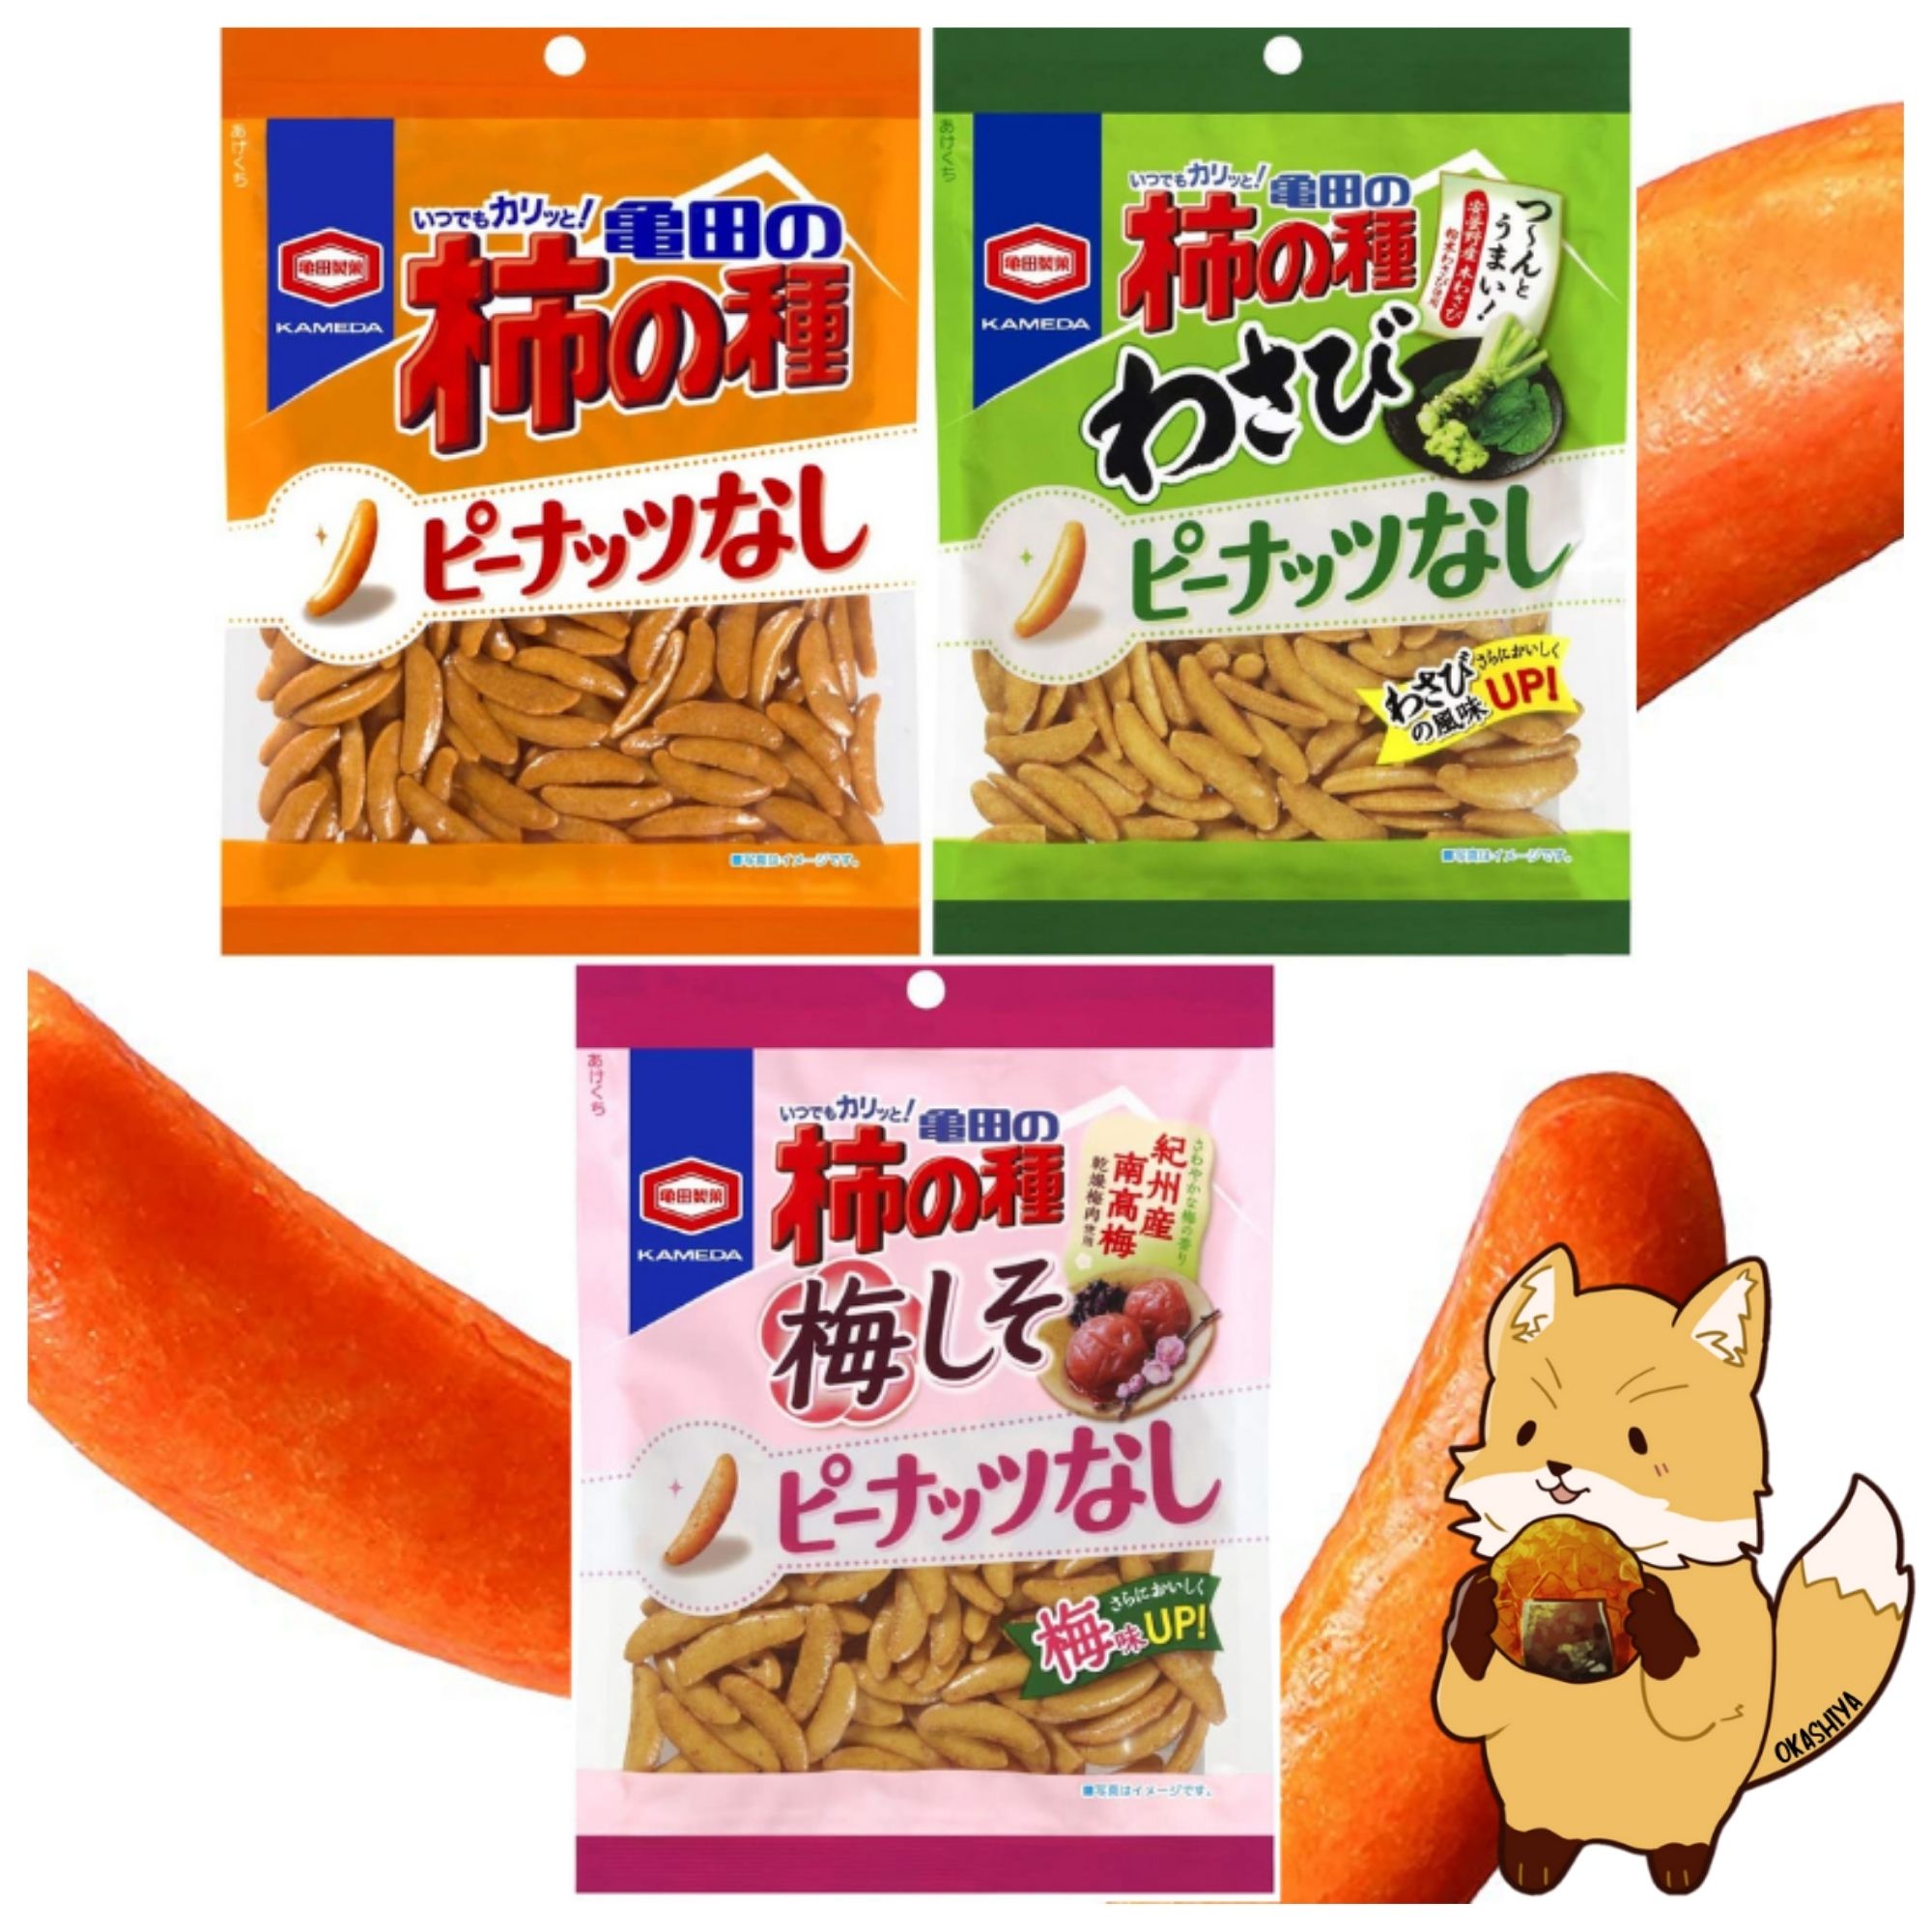 柿の種 ขนมญี่ปุ่น ขนมข้าวอบกรอบปรุงรส คากิโนะ ทาเนะ KAKI NO TANE สินค้าขายดีจากญี่ปุ่น